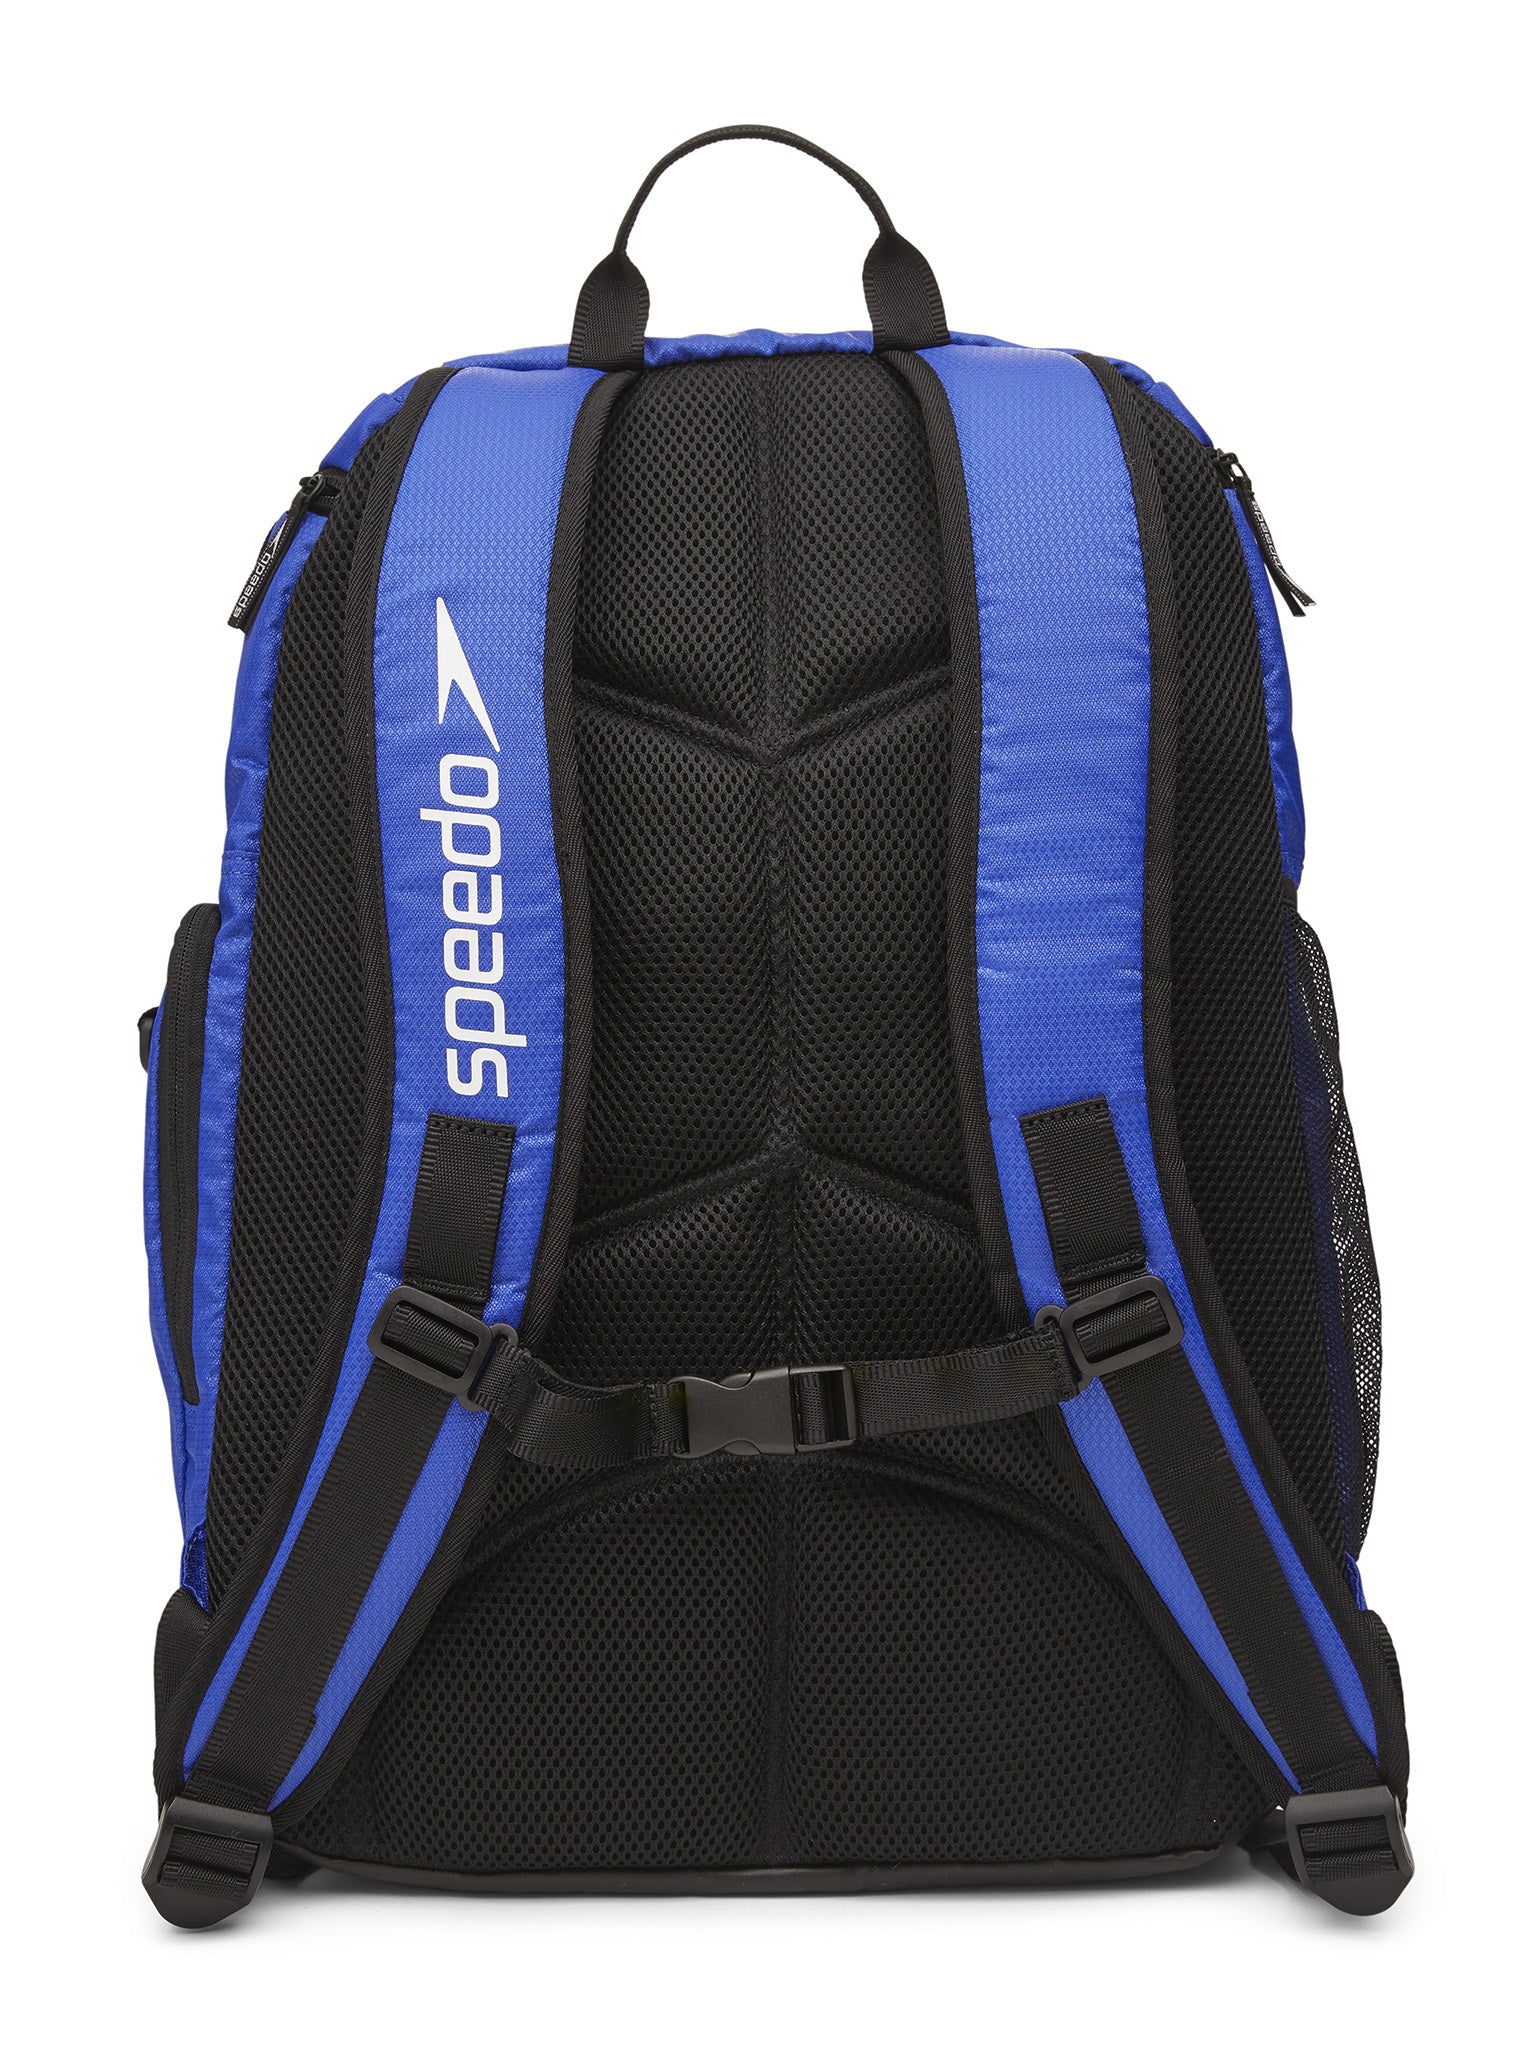 Teamster 35L Backpack 2.0